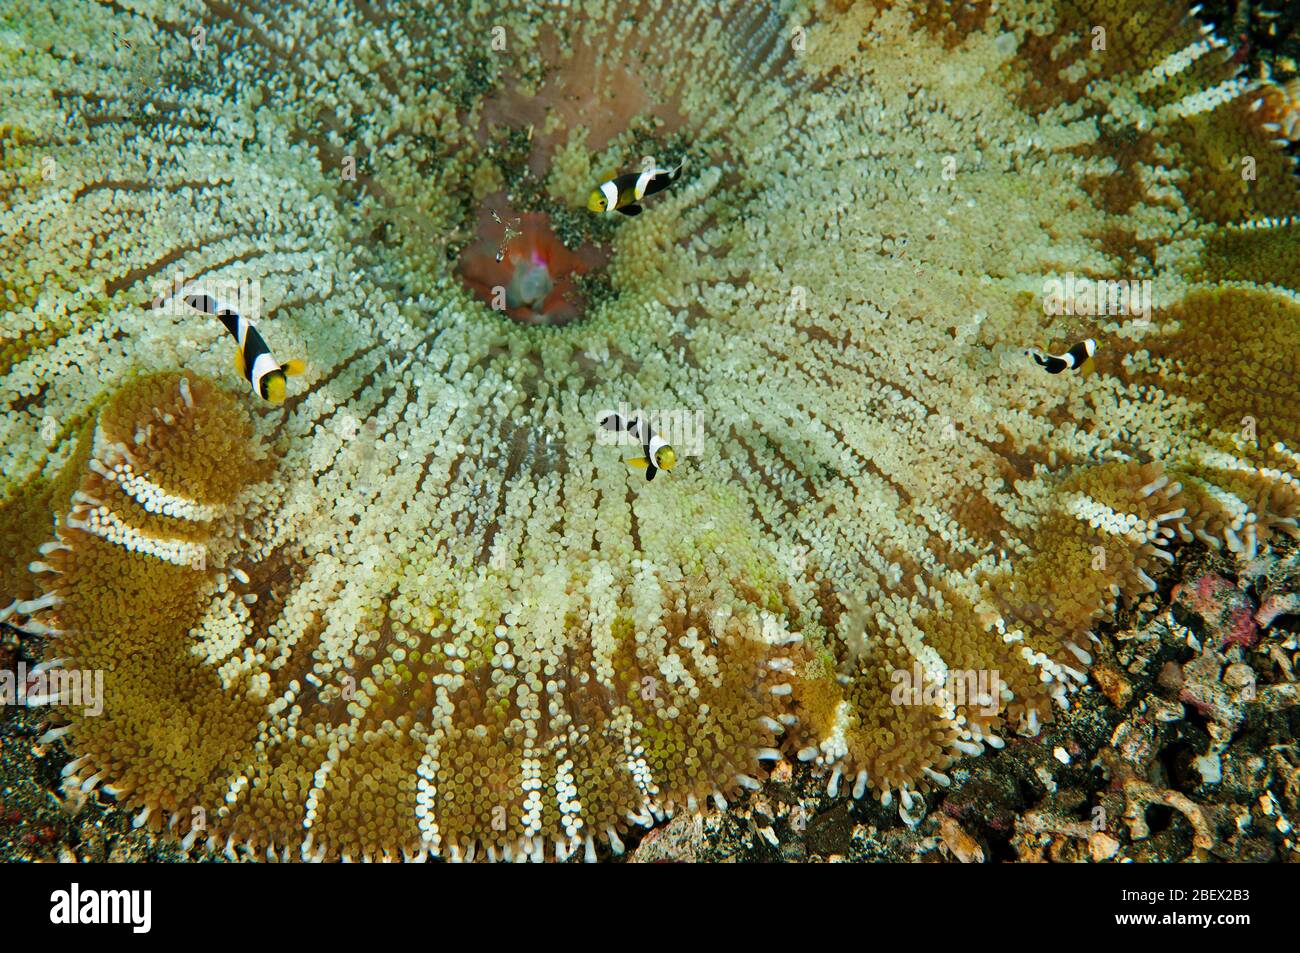 L'anemone de mer d'Haddon, Stichodactyla haddoni, avec des anemonefish de bourrade de de selles juvéniles, enjôt Sulawesi Indonésie. Banque D'Images